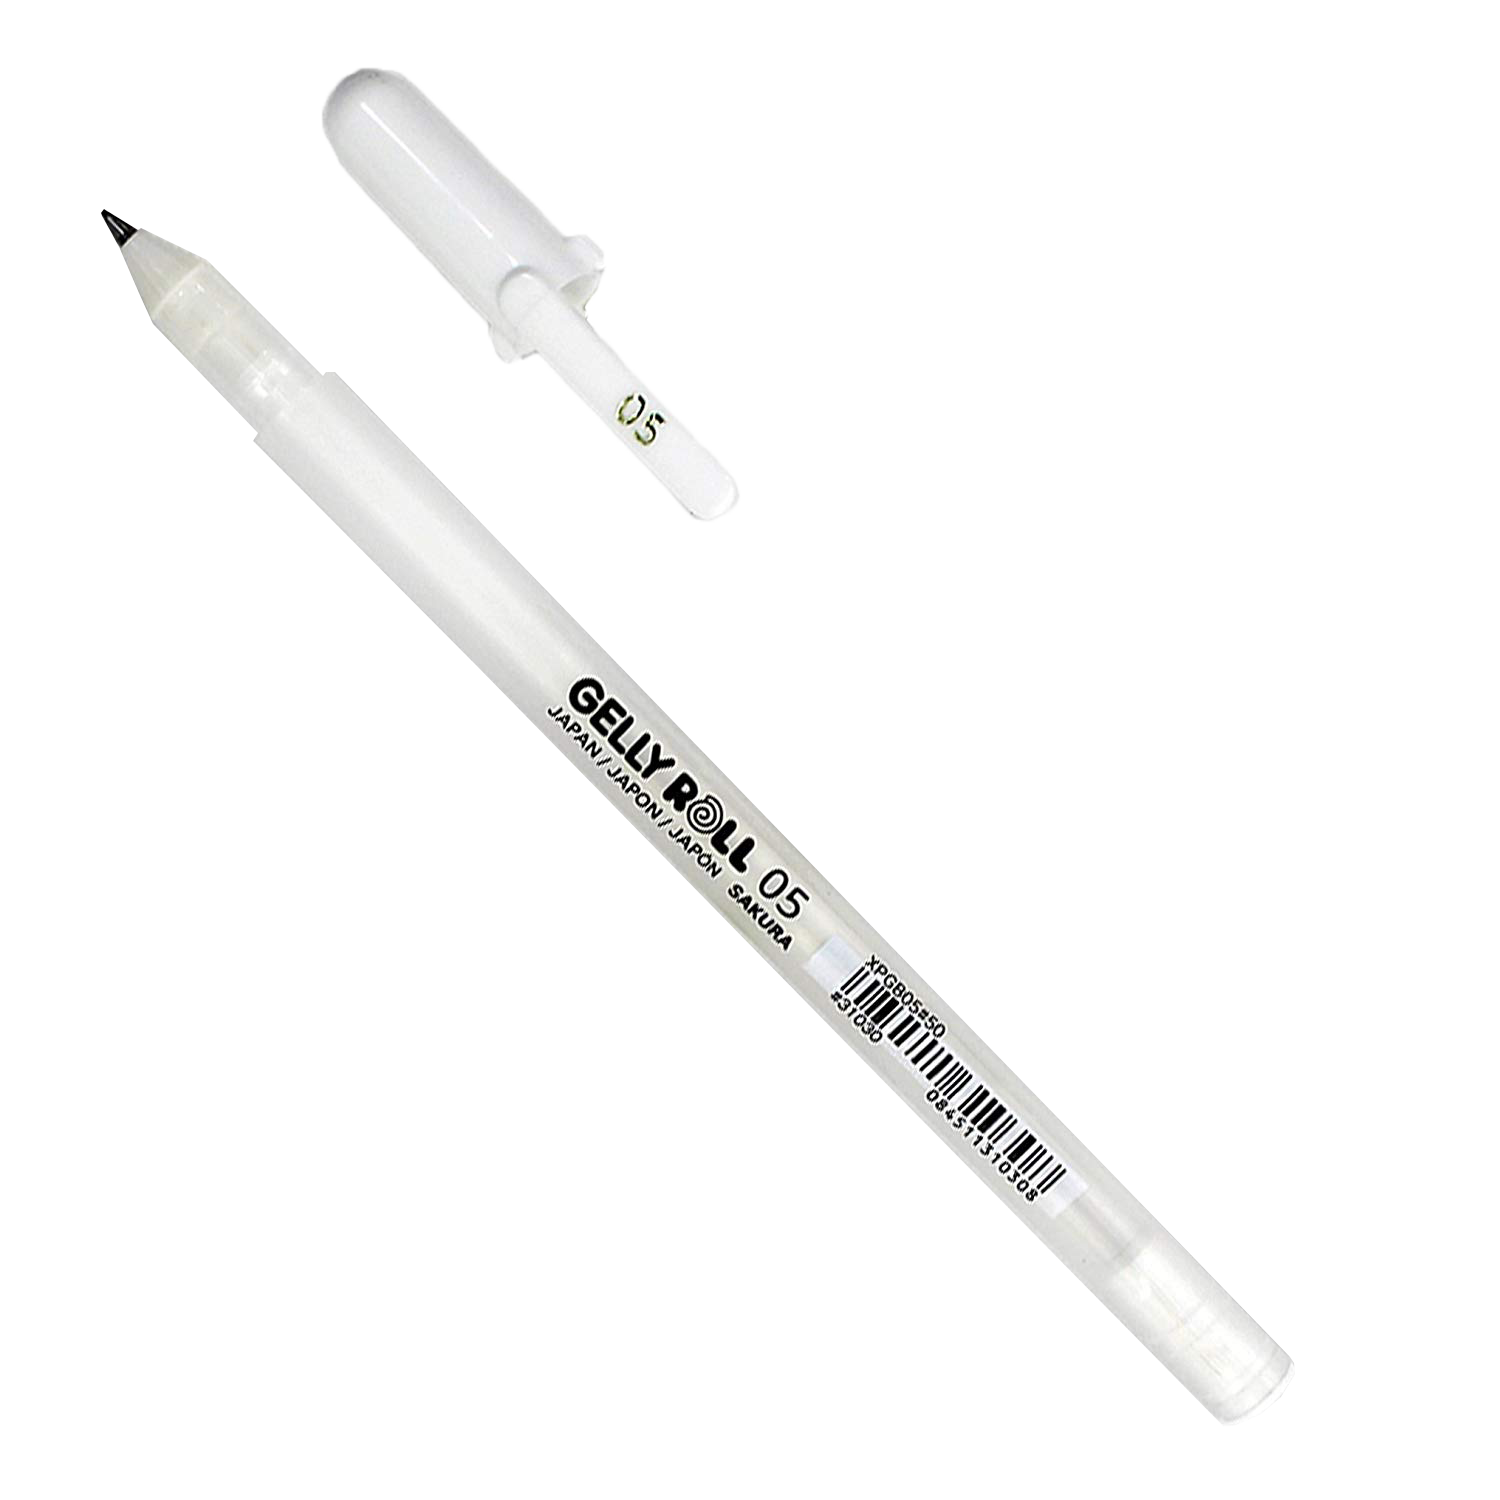 Sakura Gelly Roll Gel Pen White 05 - 0.3 mm